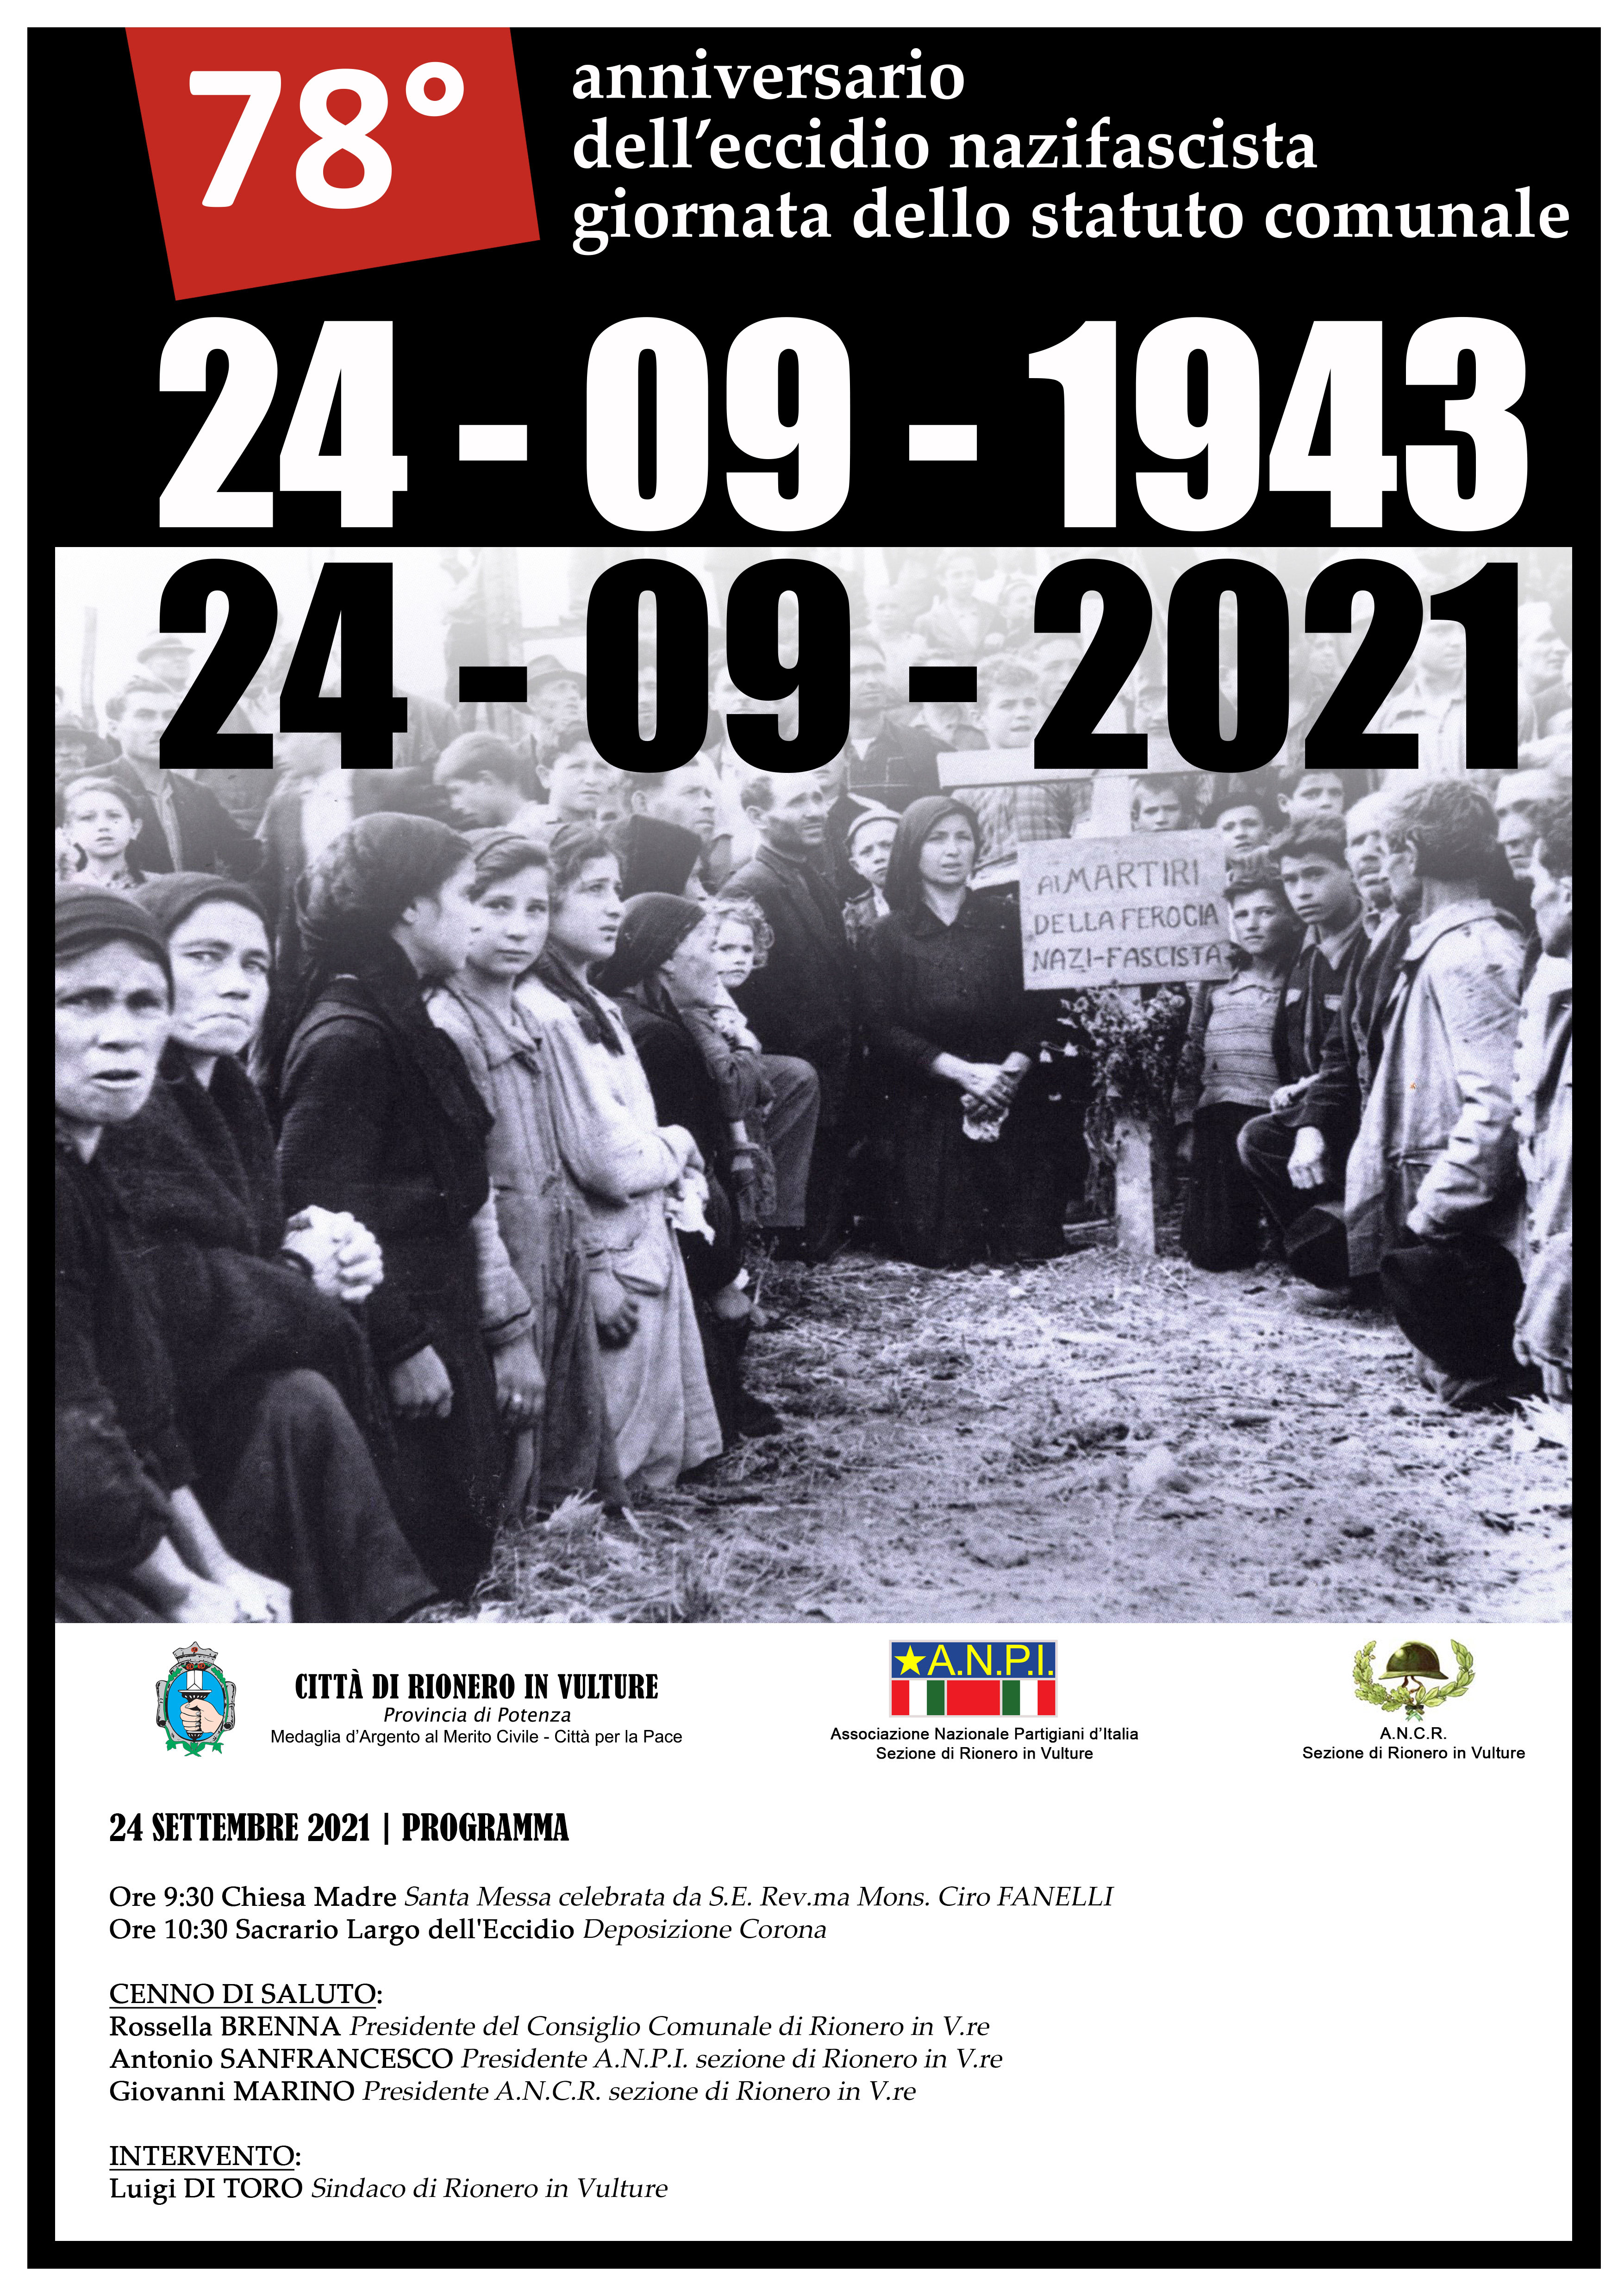 78° Anniversario dell'eccidio nazifascista - Giornata dello Statuto